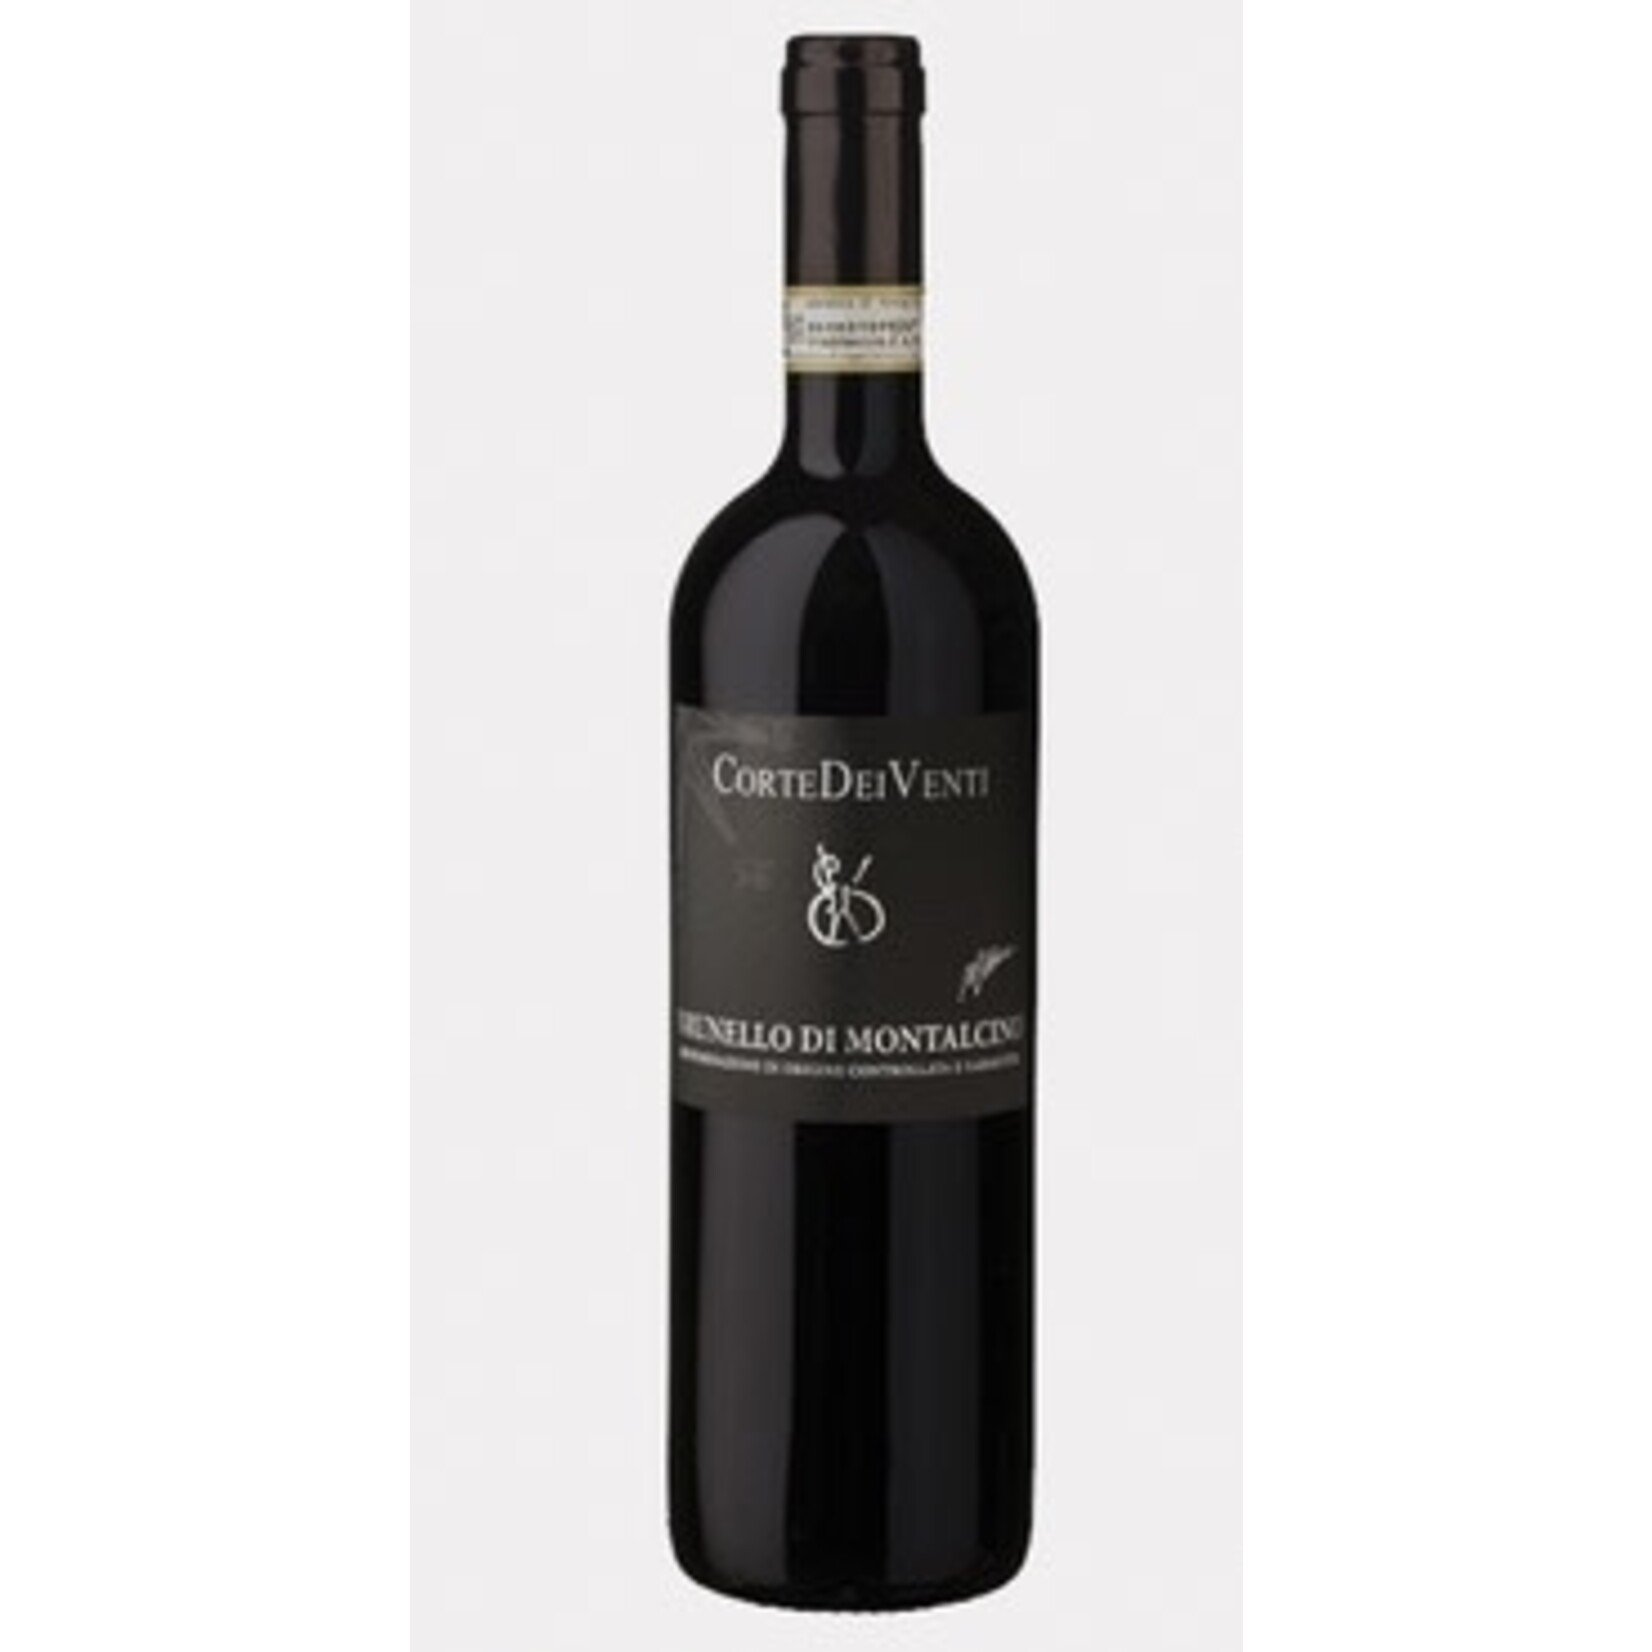 Wine Corte dei Venti, Brunello di Montalcino 2018